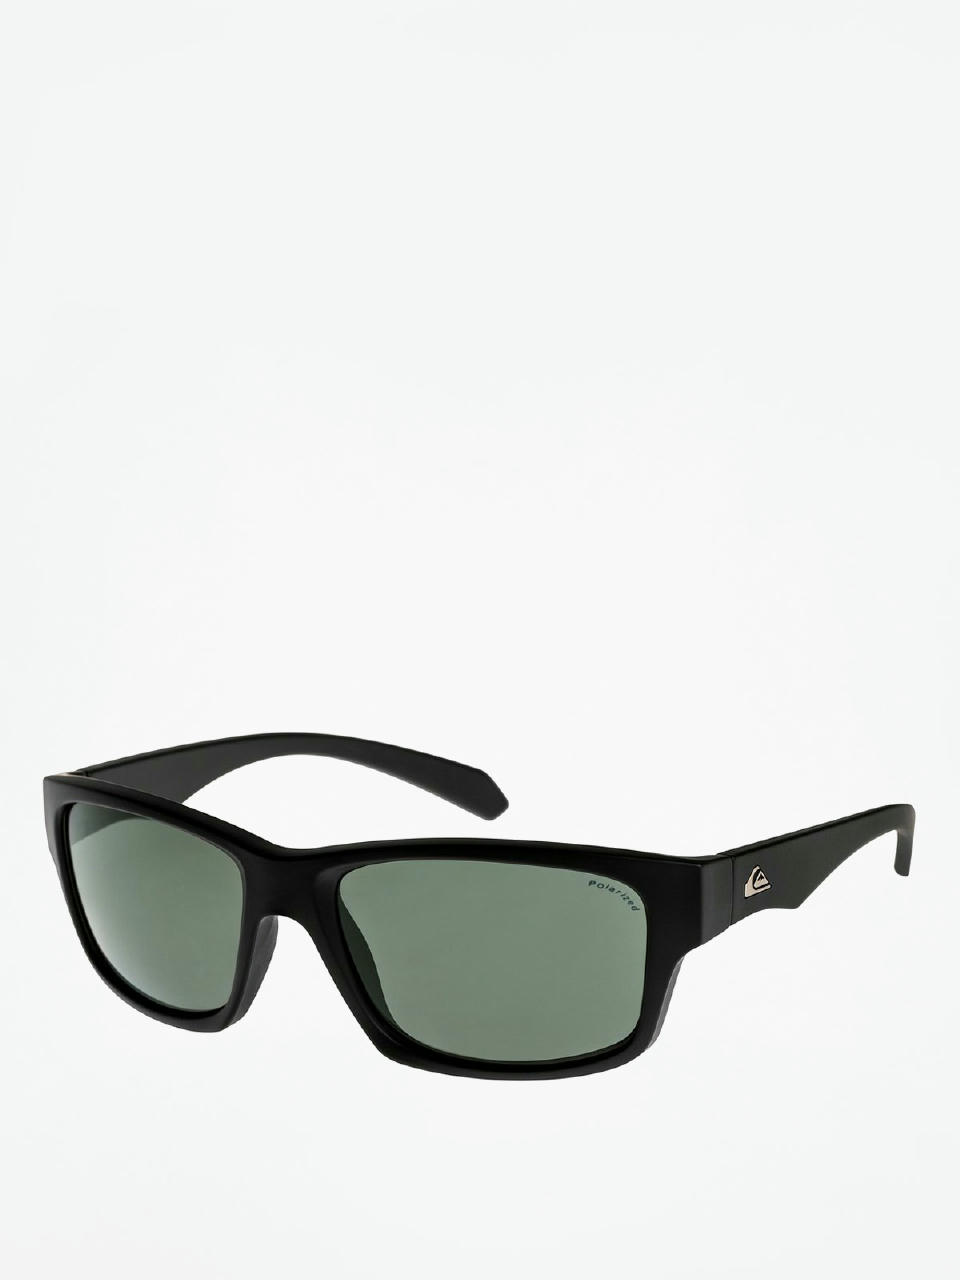 Quiksilver Sunglasses (black/plz green) Road Off